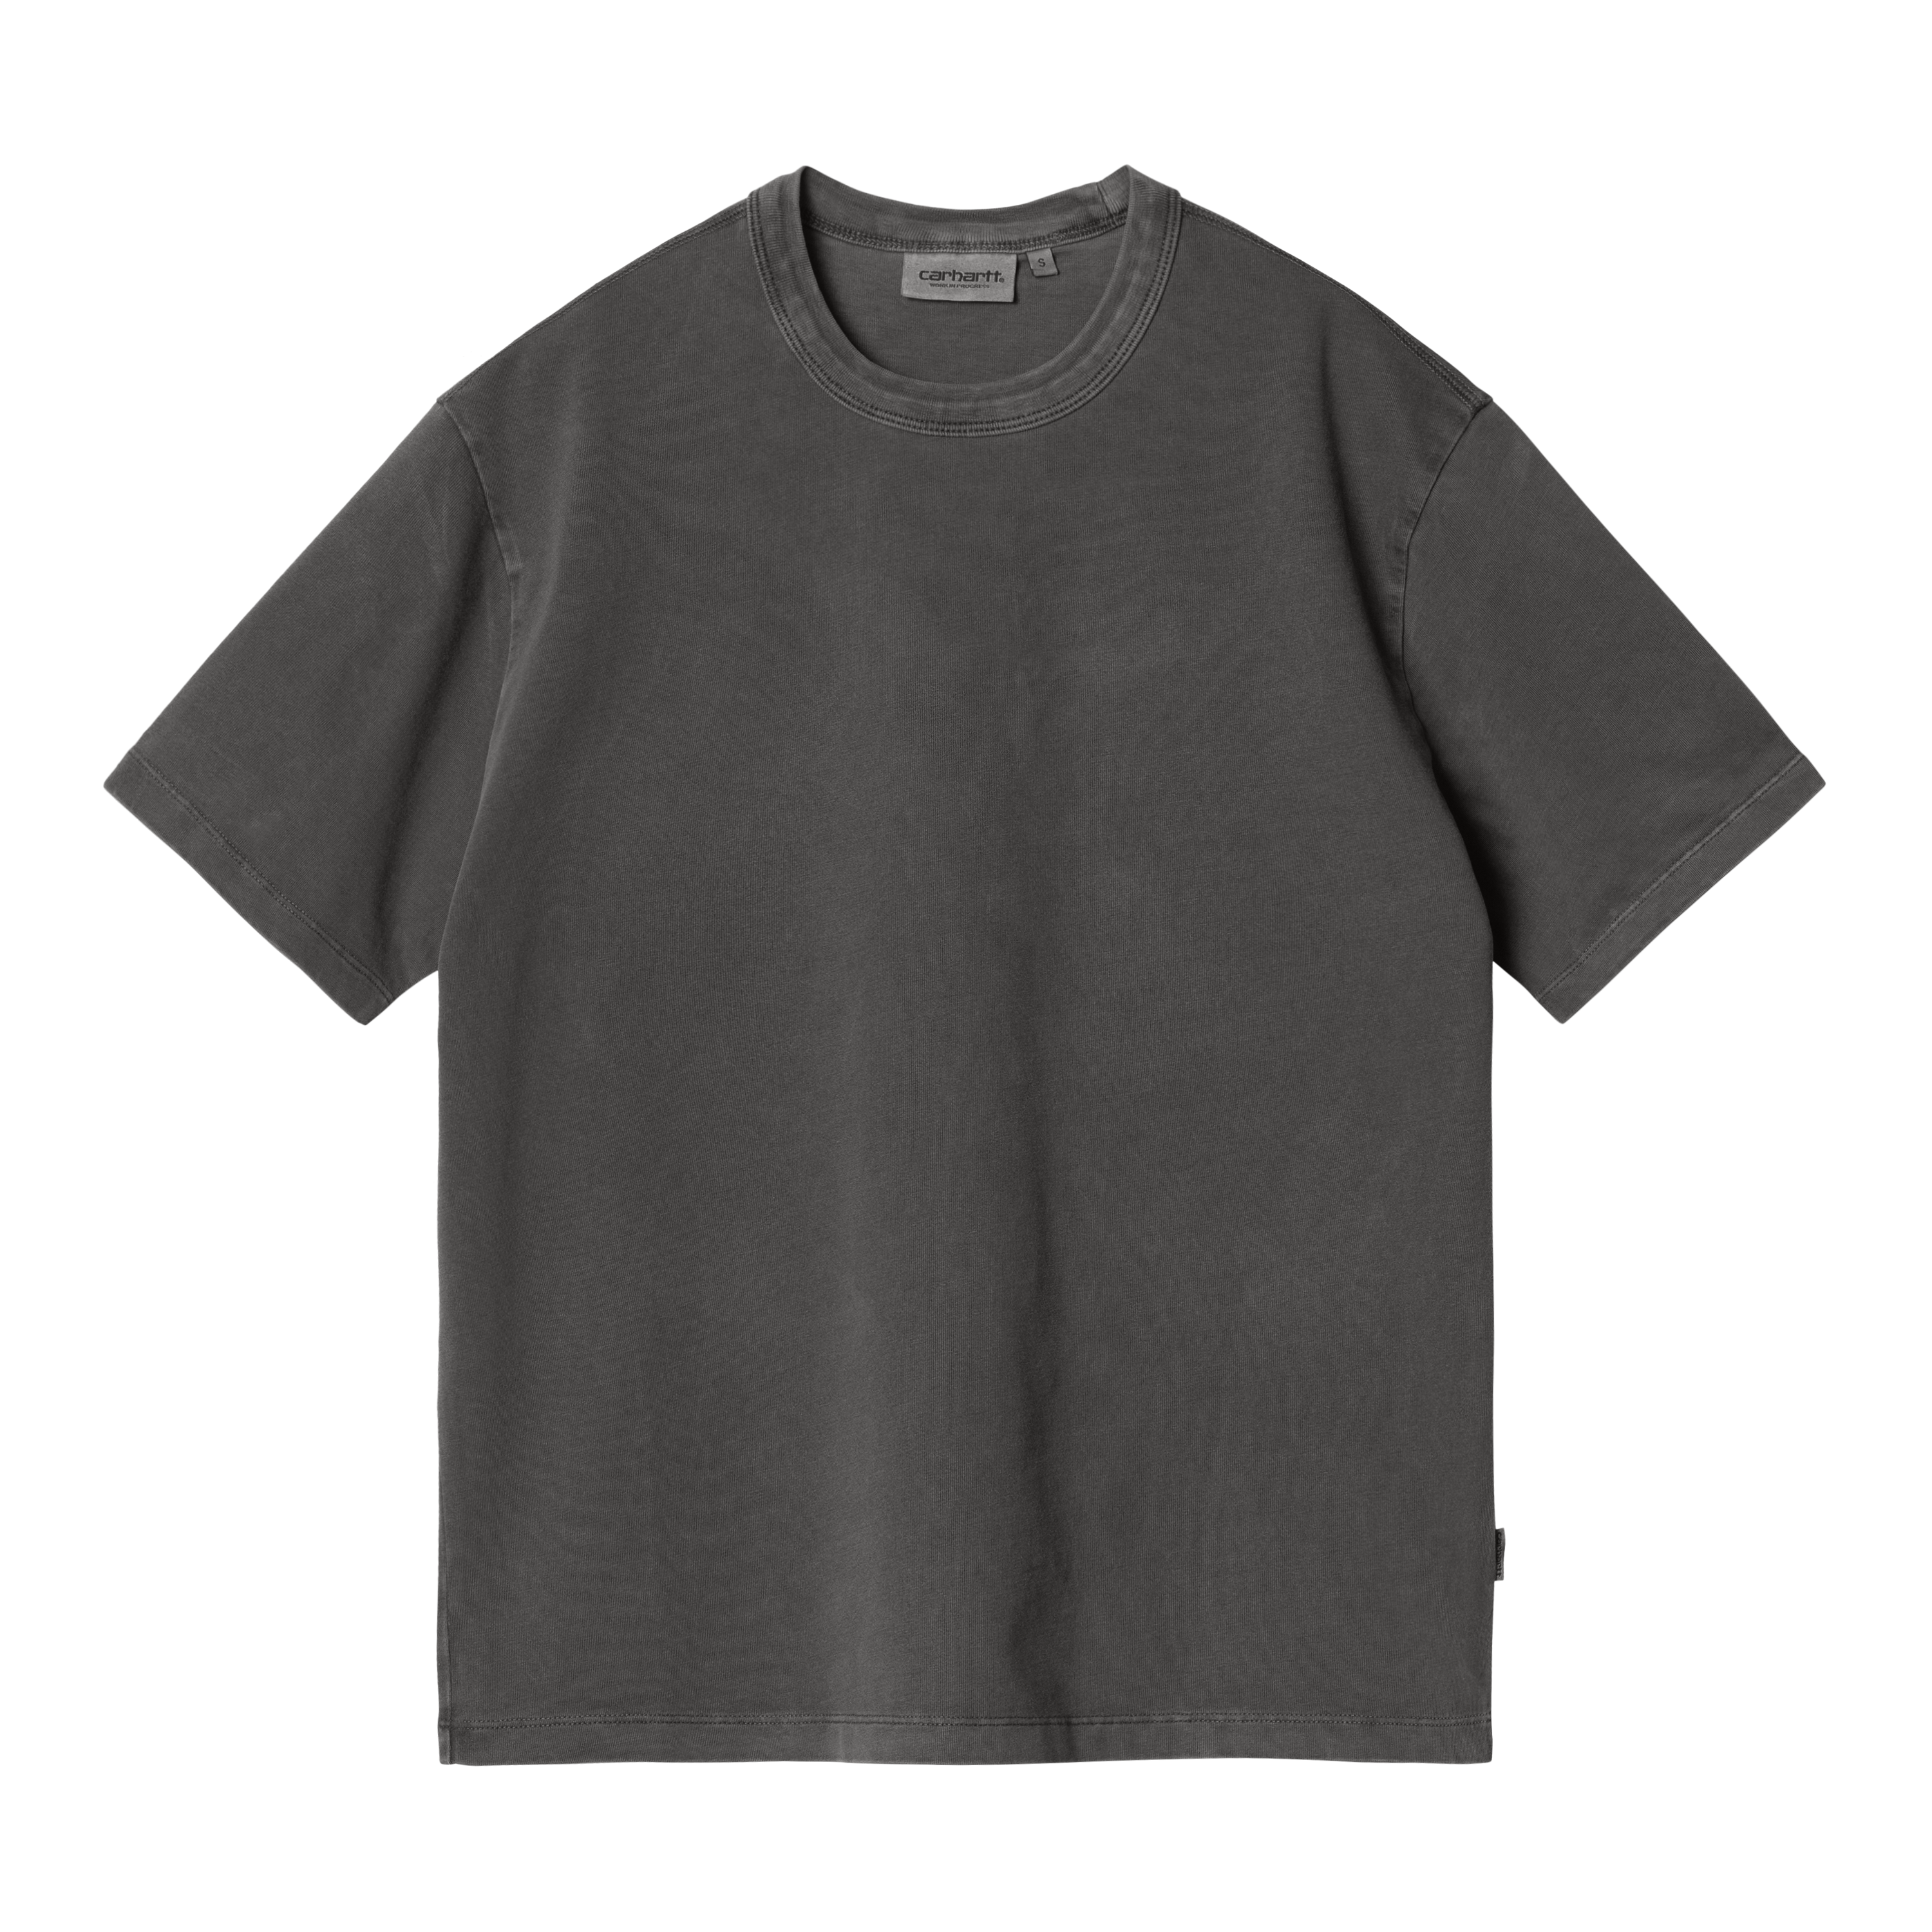 Carhartt WIP Women’s Short Sleeve Taos T-Shirt Noir